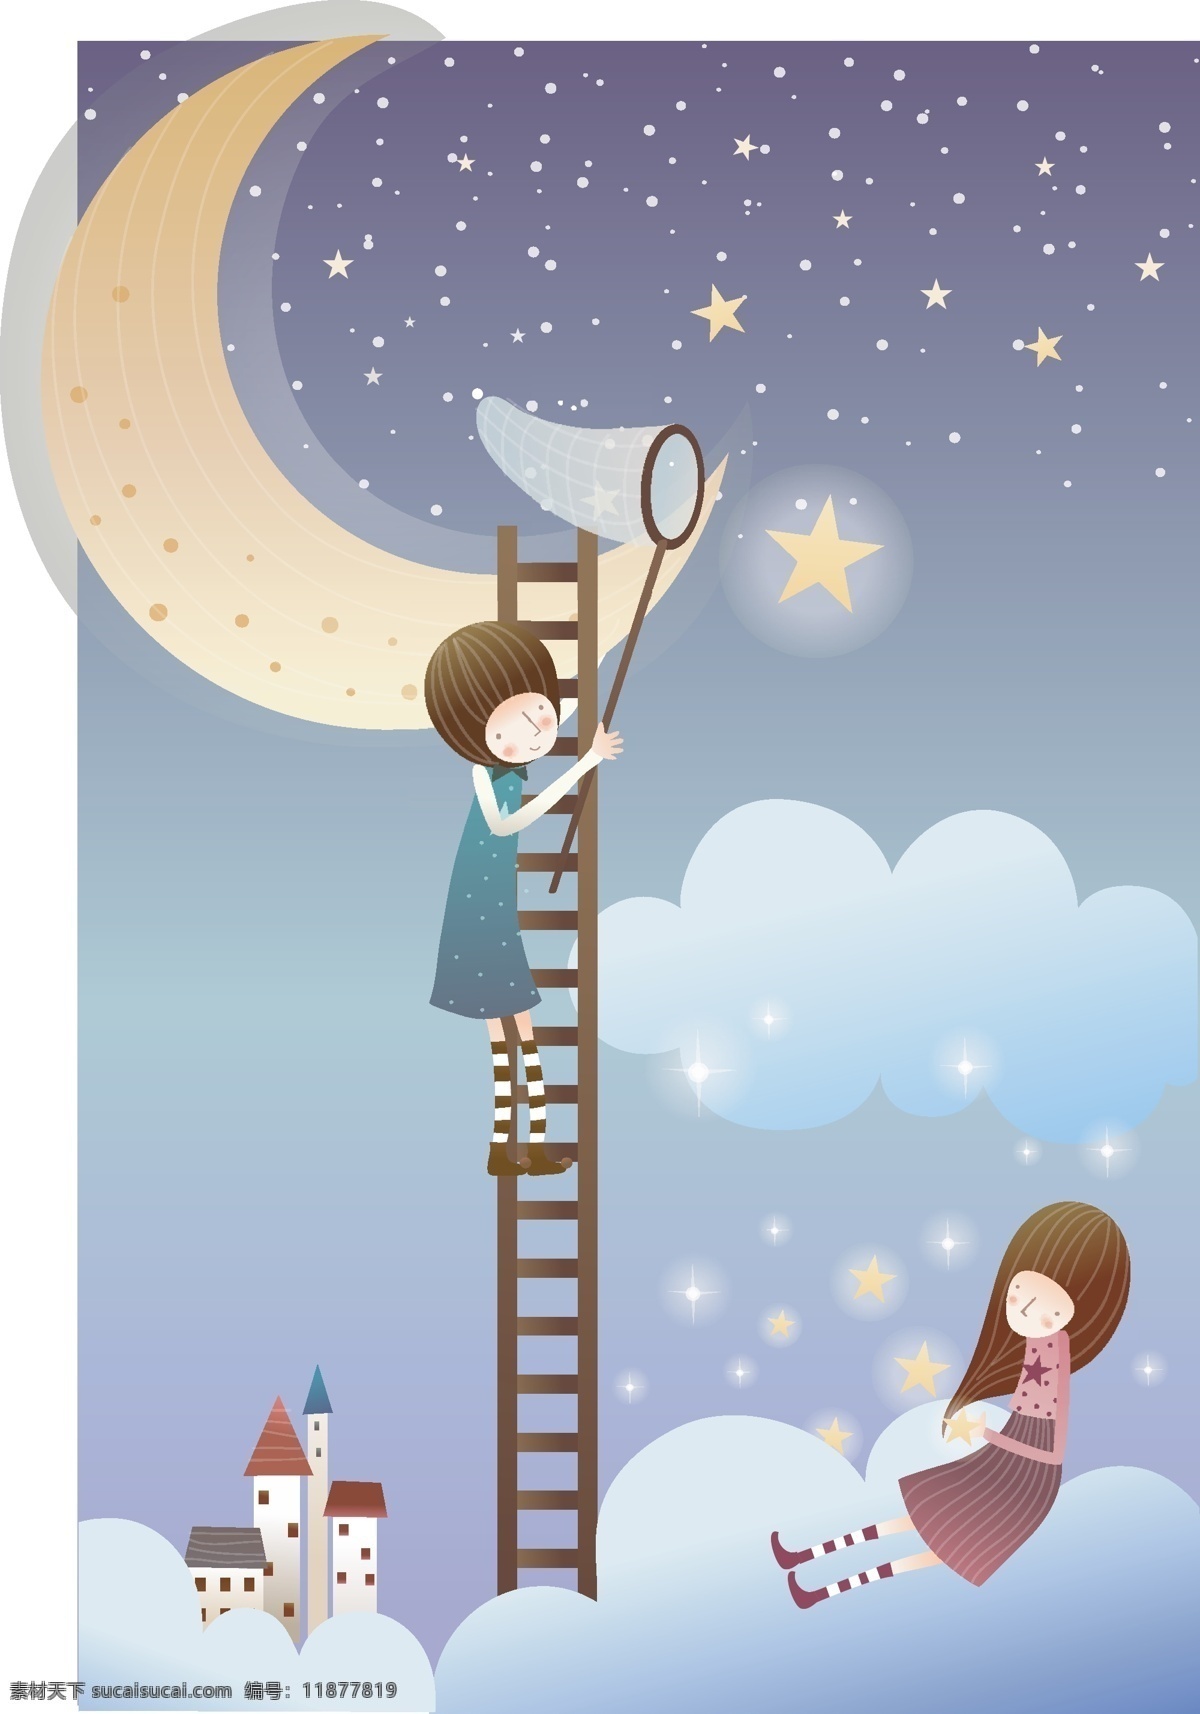 梯子上的孩子 梯子 孩子 月亮 卡通人物 卡通插画 卡通动漫 新人情侣 矢量人物 矢量素材 白色